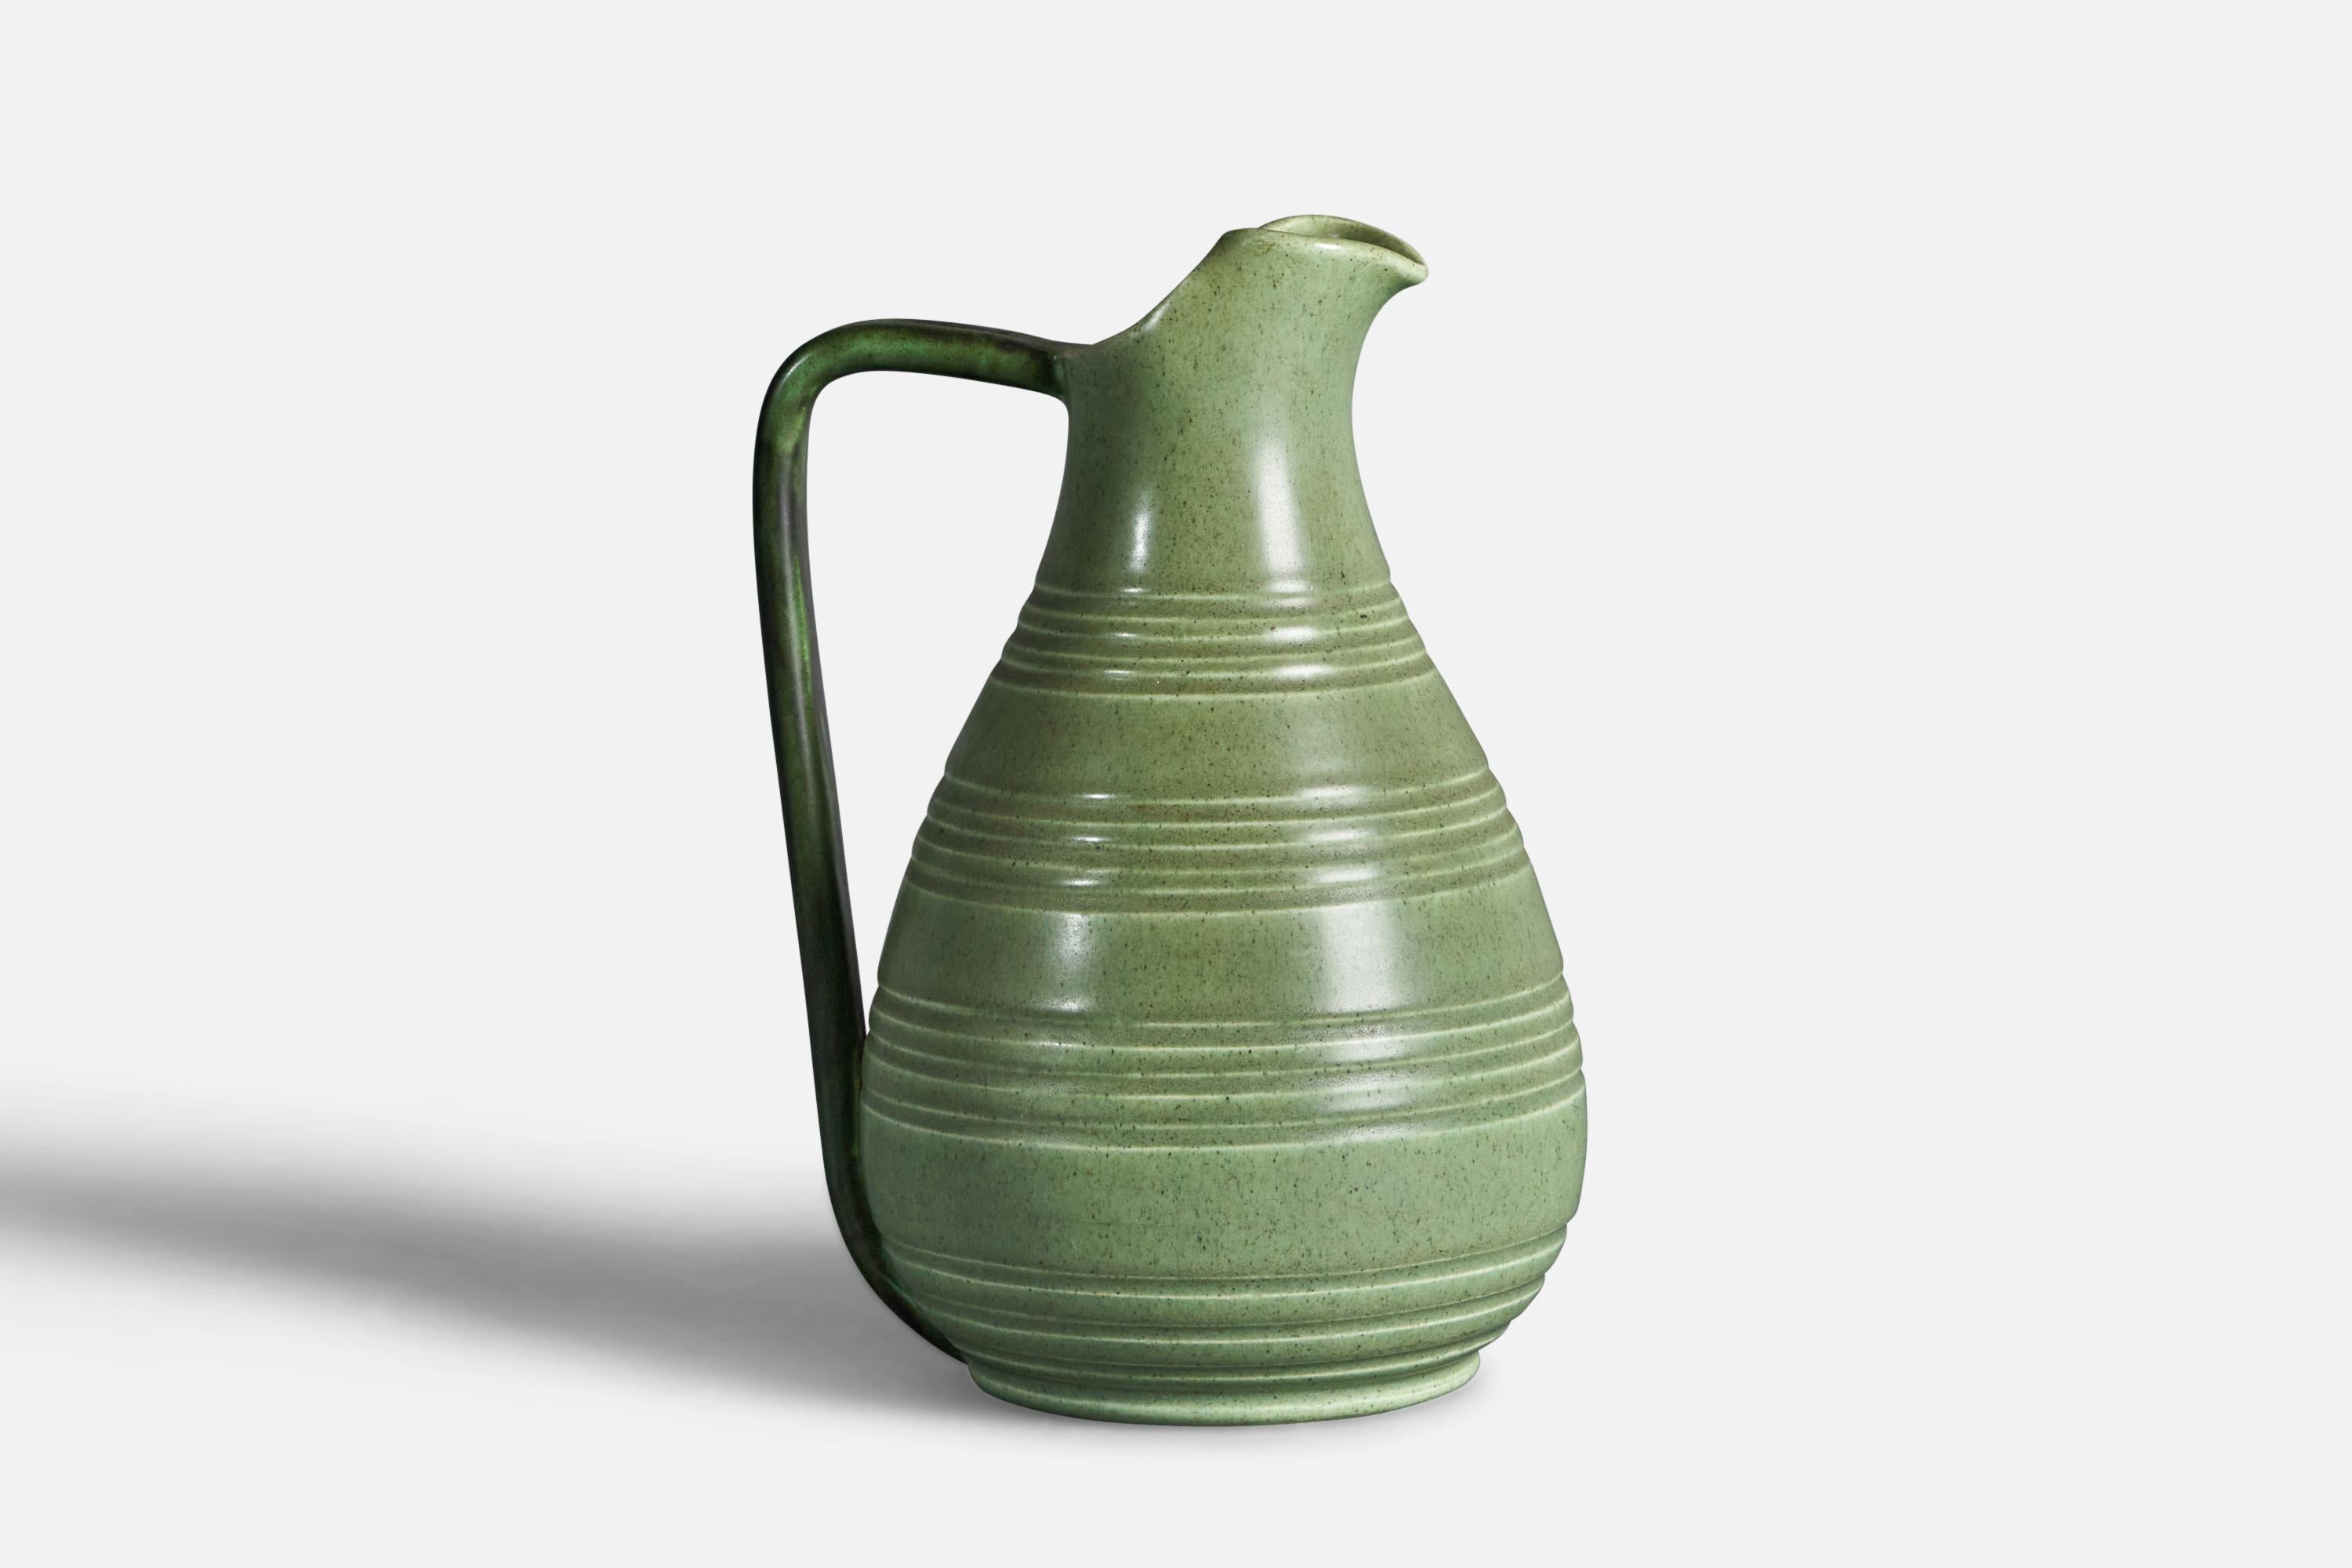 Pichet en verre vert et incisé conçu et produit par Bo Fajans, Suède, vers les années 1940.